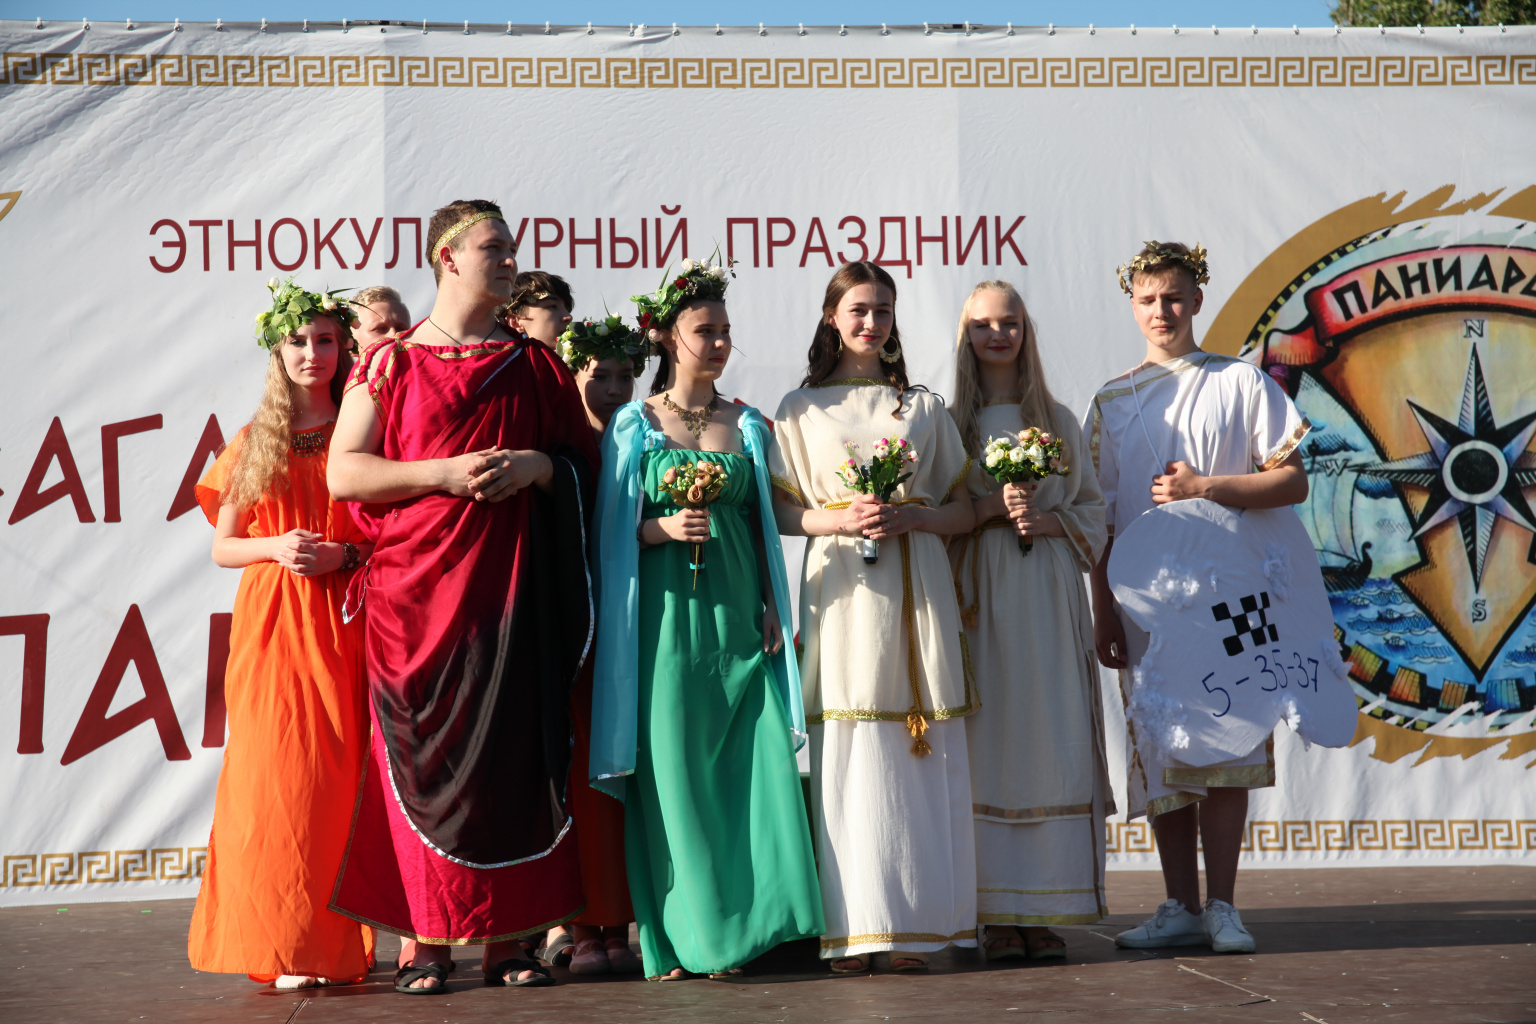 Конкурсы греческого костюма и прически с дефиле на фестивале